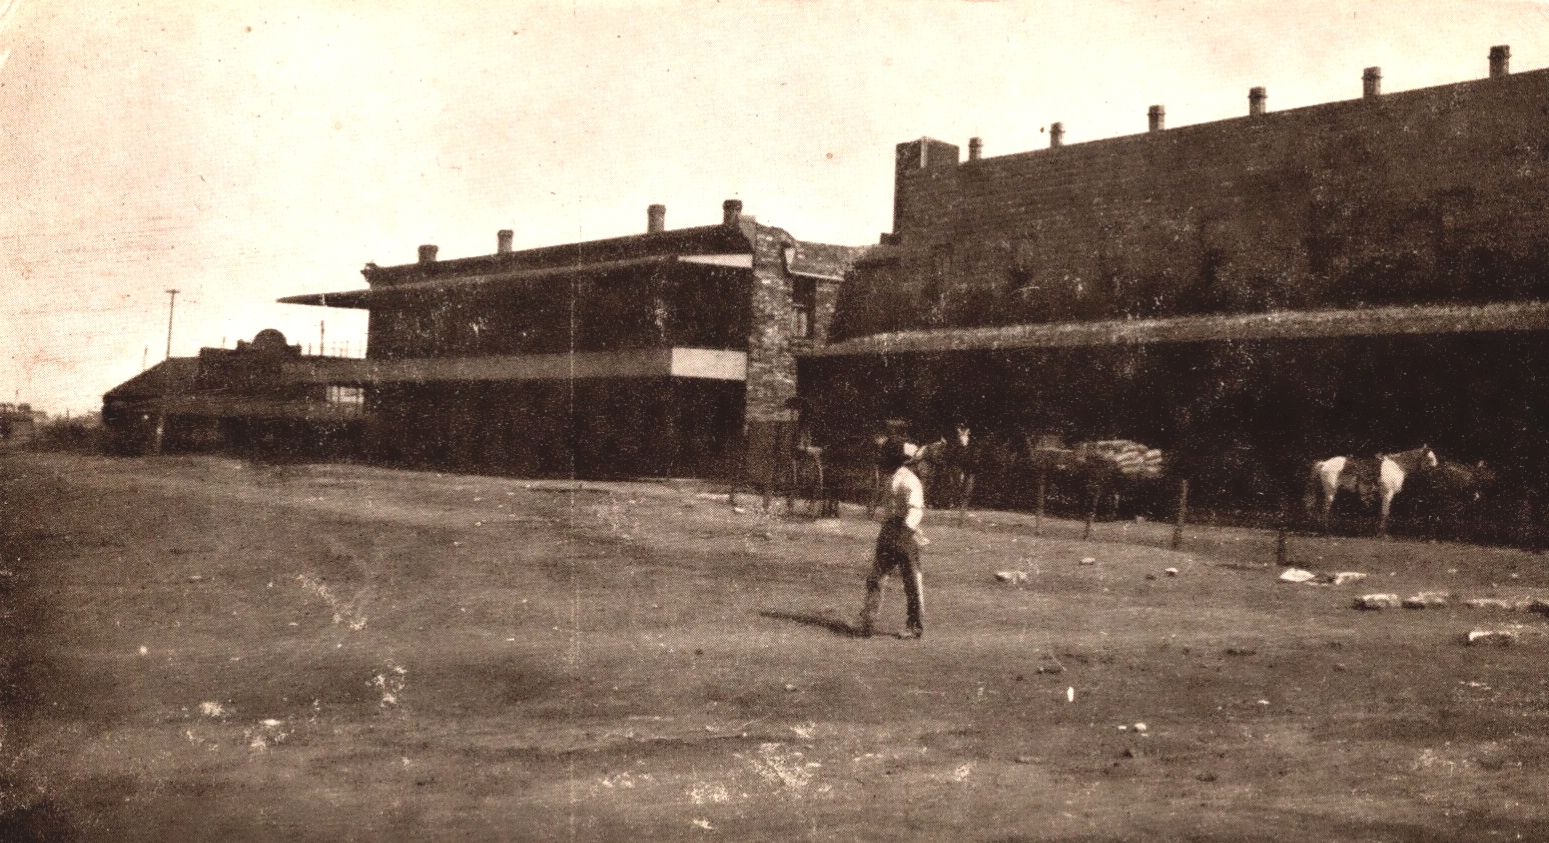 Hotel Denver in Childress in 1890